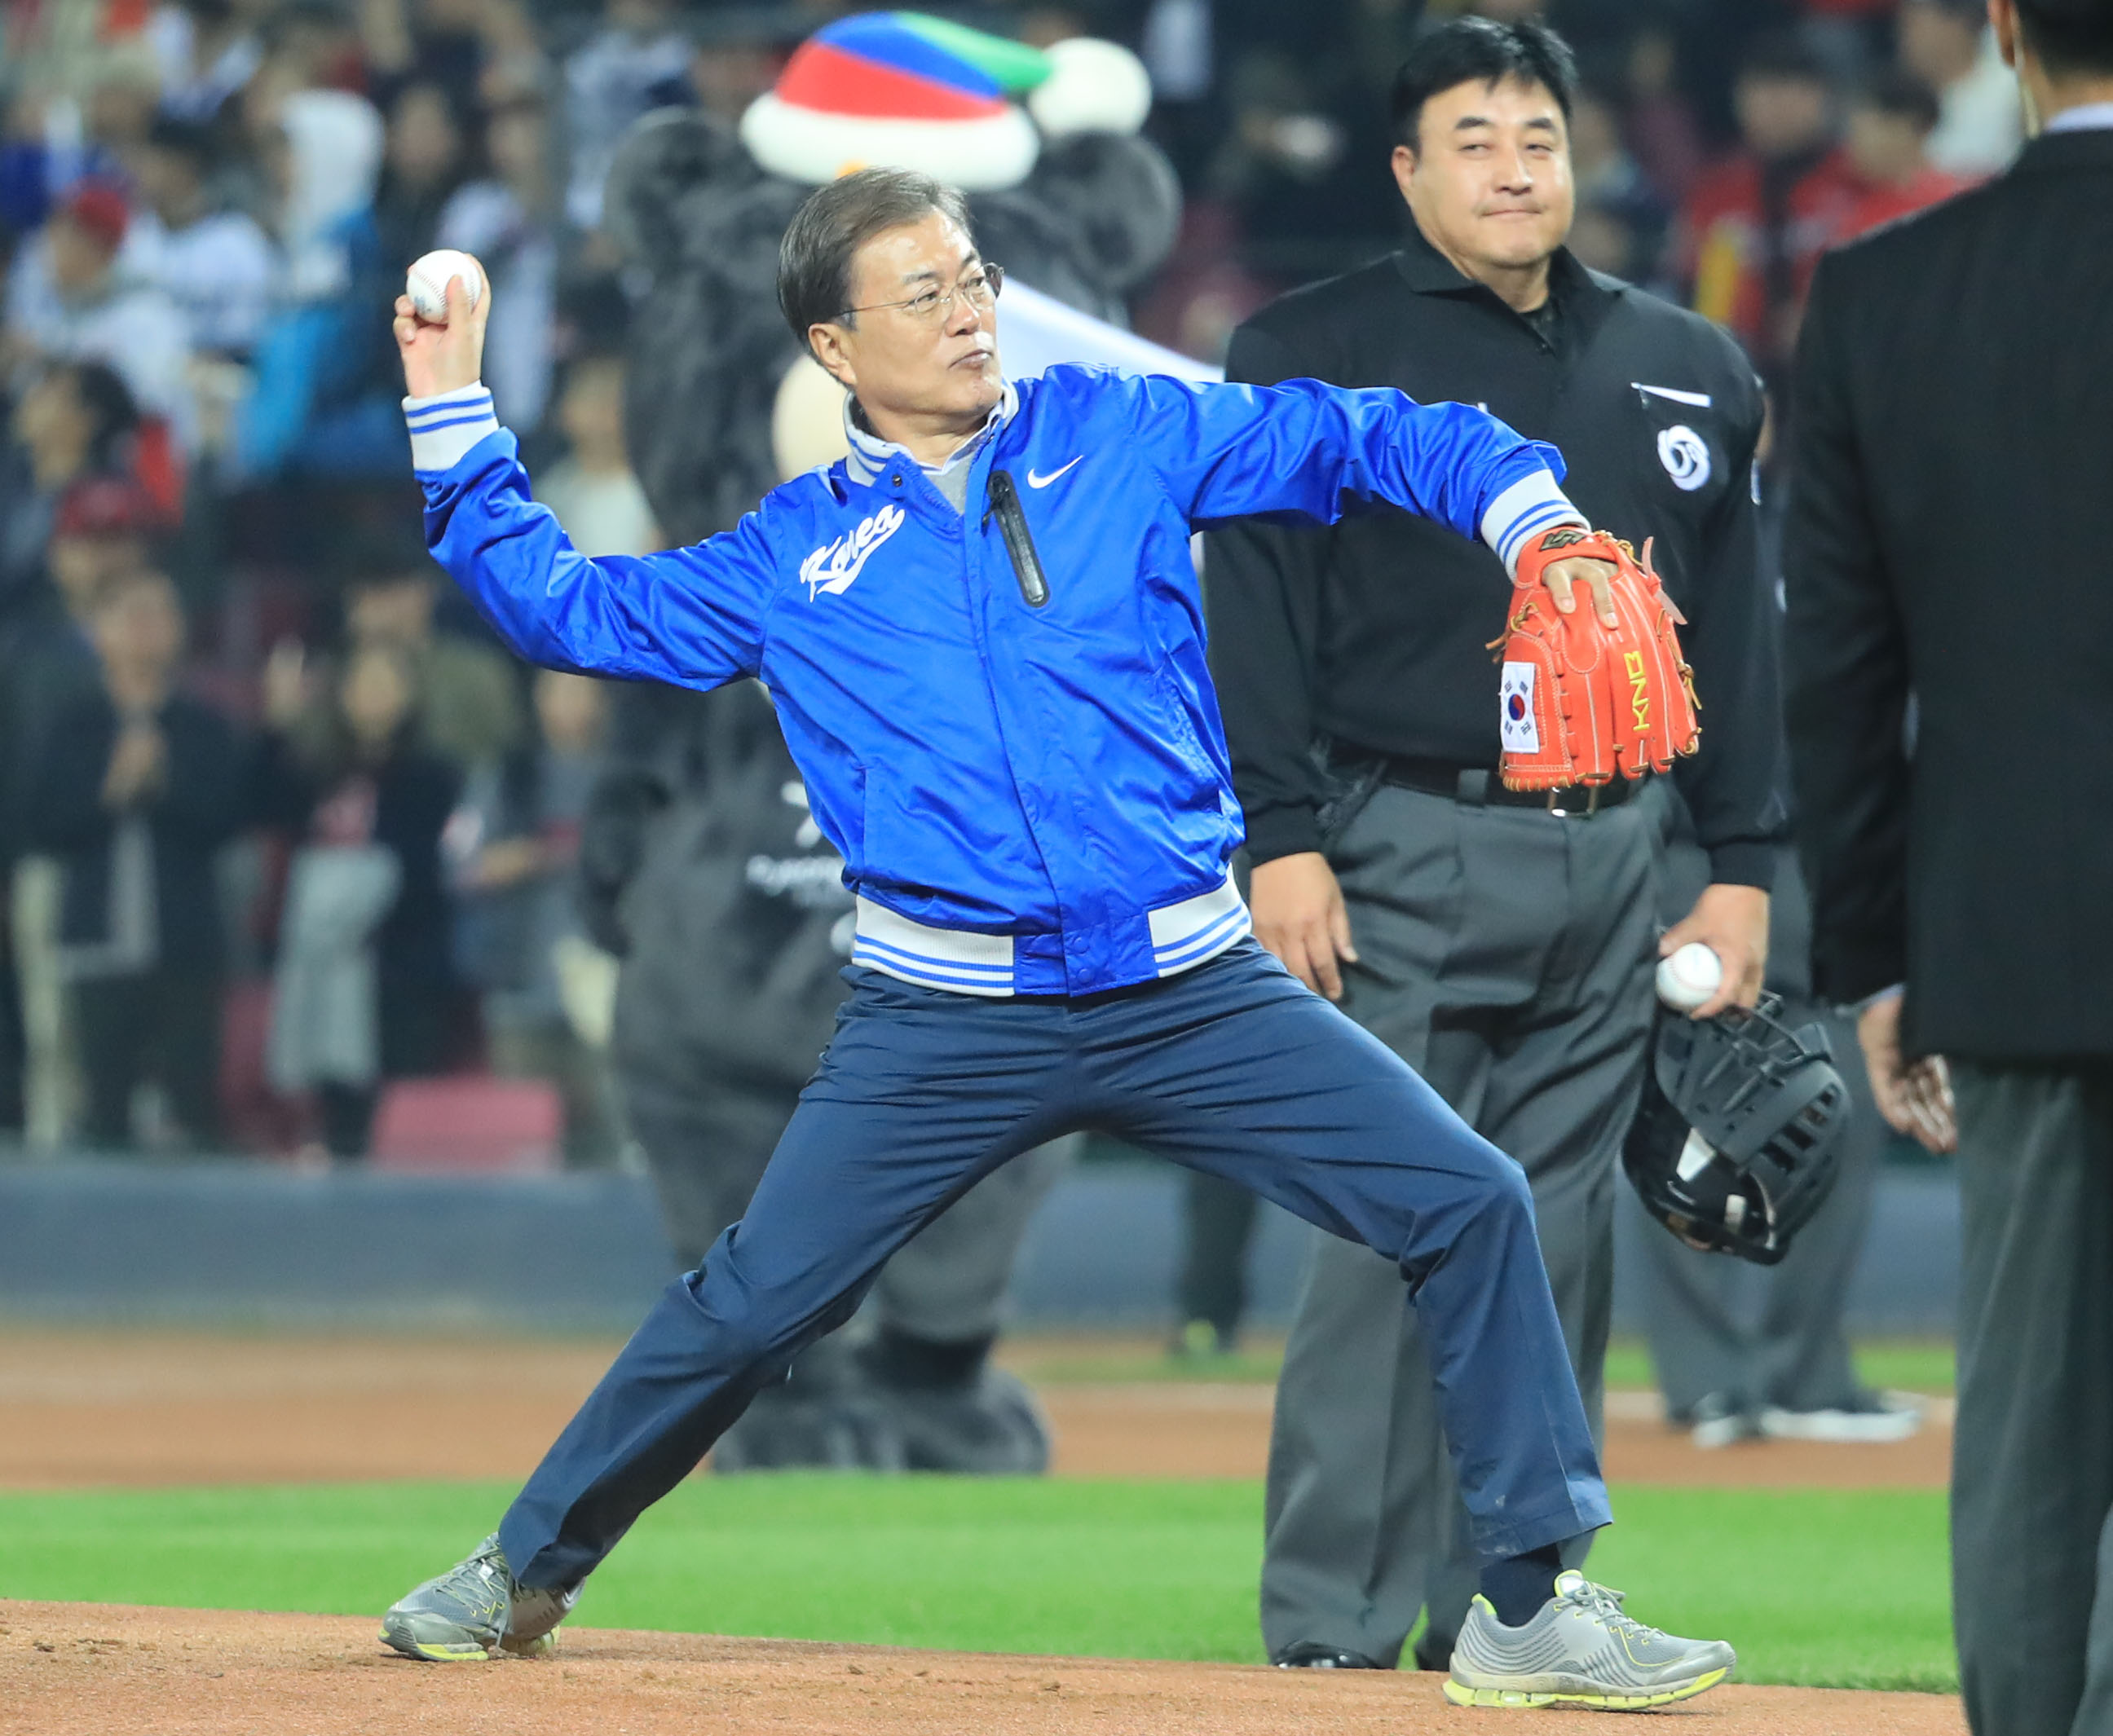 (광주=연합뉴스) 서명곤 기자 = 문재인 대통령이 25일 오후 광주광역시 광주-KIA 챔피언스필드에서 열린 2017 프로야구 한국시리즈 1차전 두산 베어스와 KIA 타이거즈의 경기에서 경기 시작을 알리는 시구를 하고 있다.